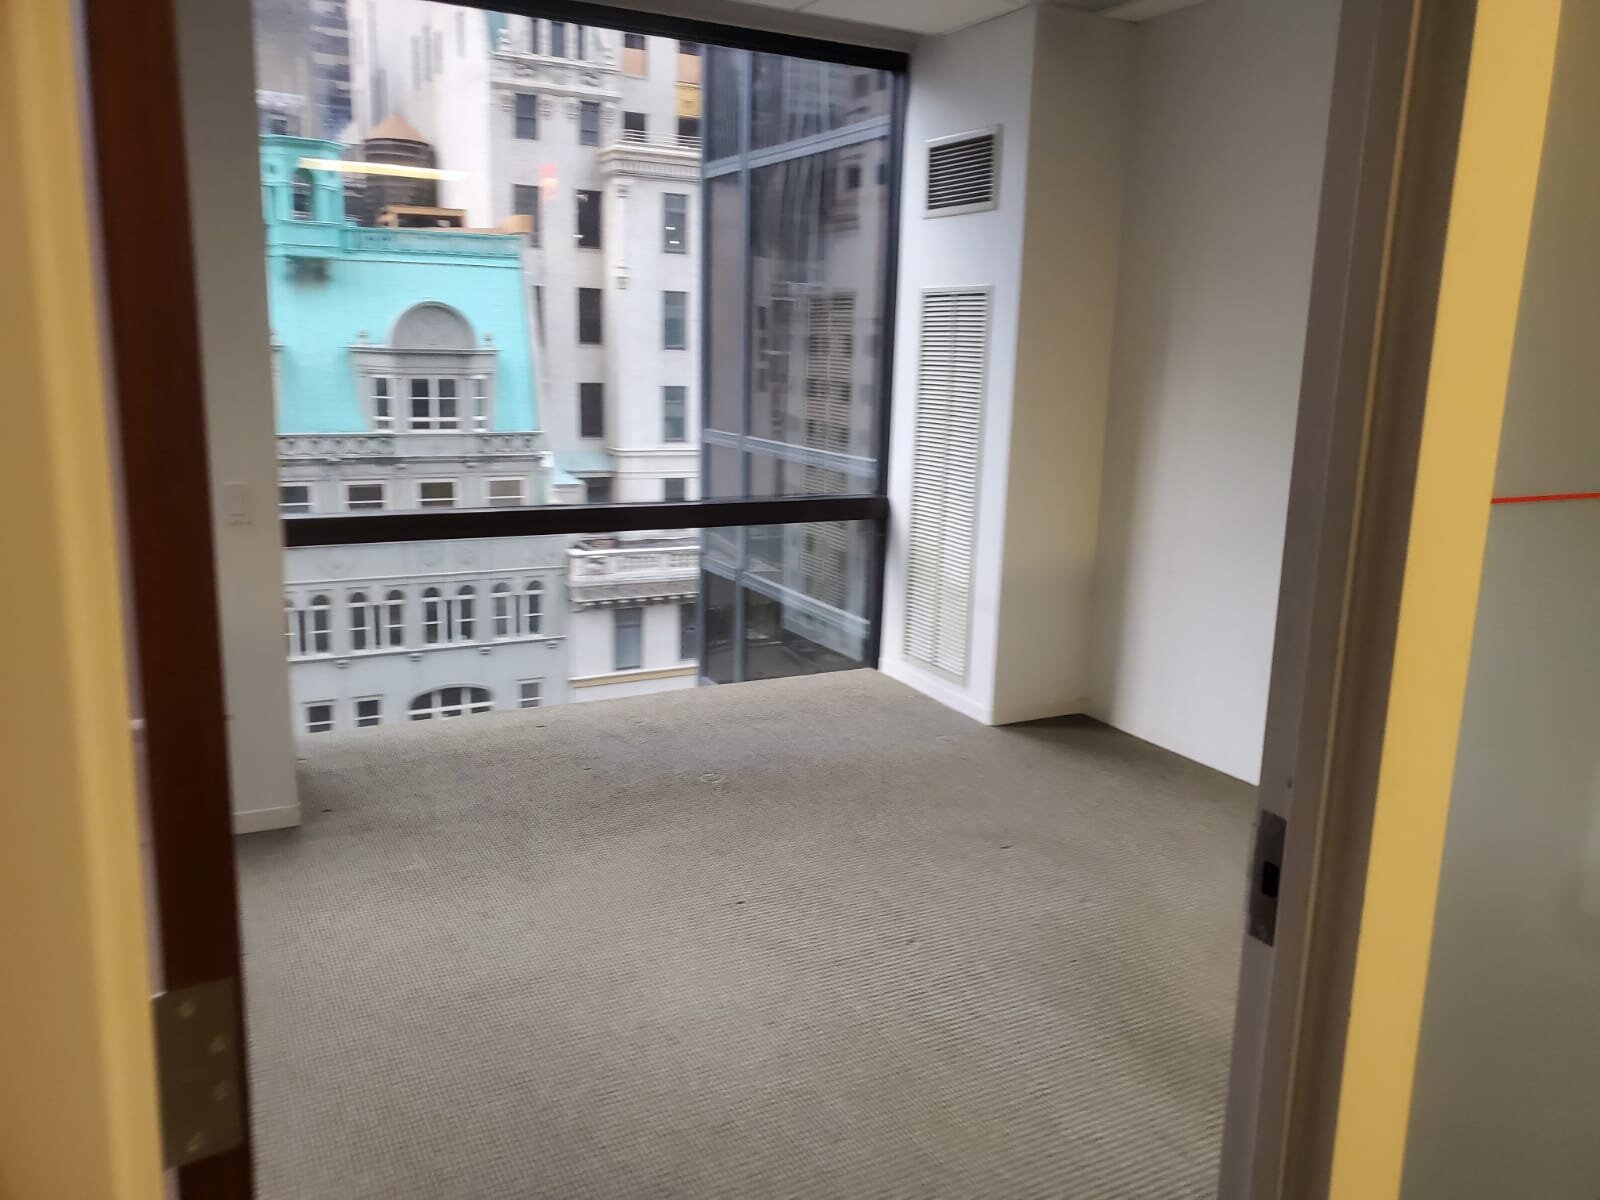 broom sweep floors - Office Furniture NYC (view).jpg